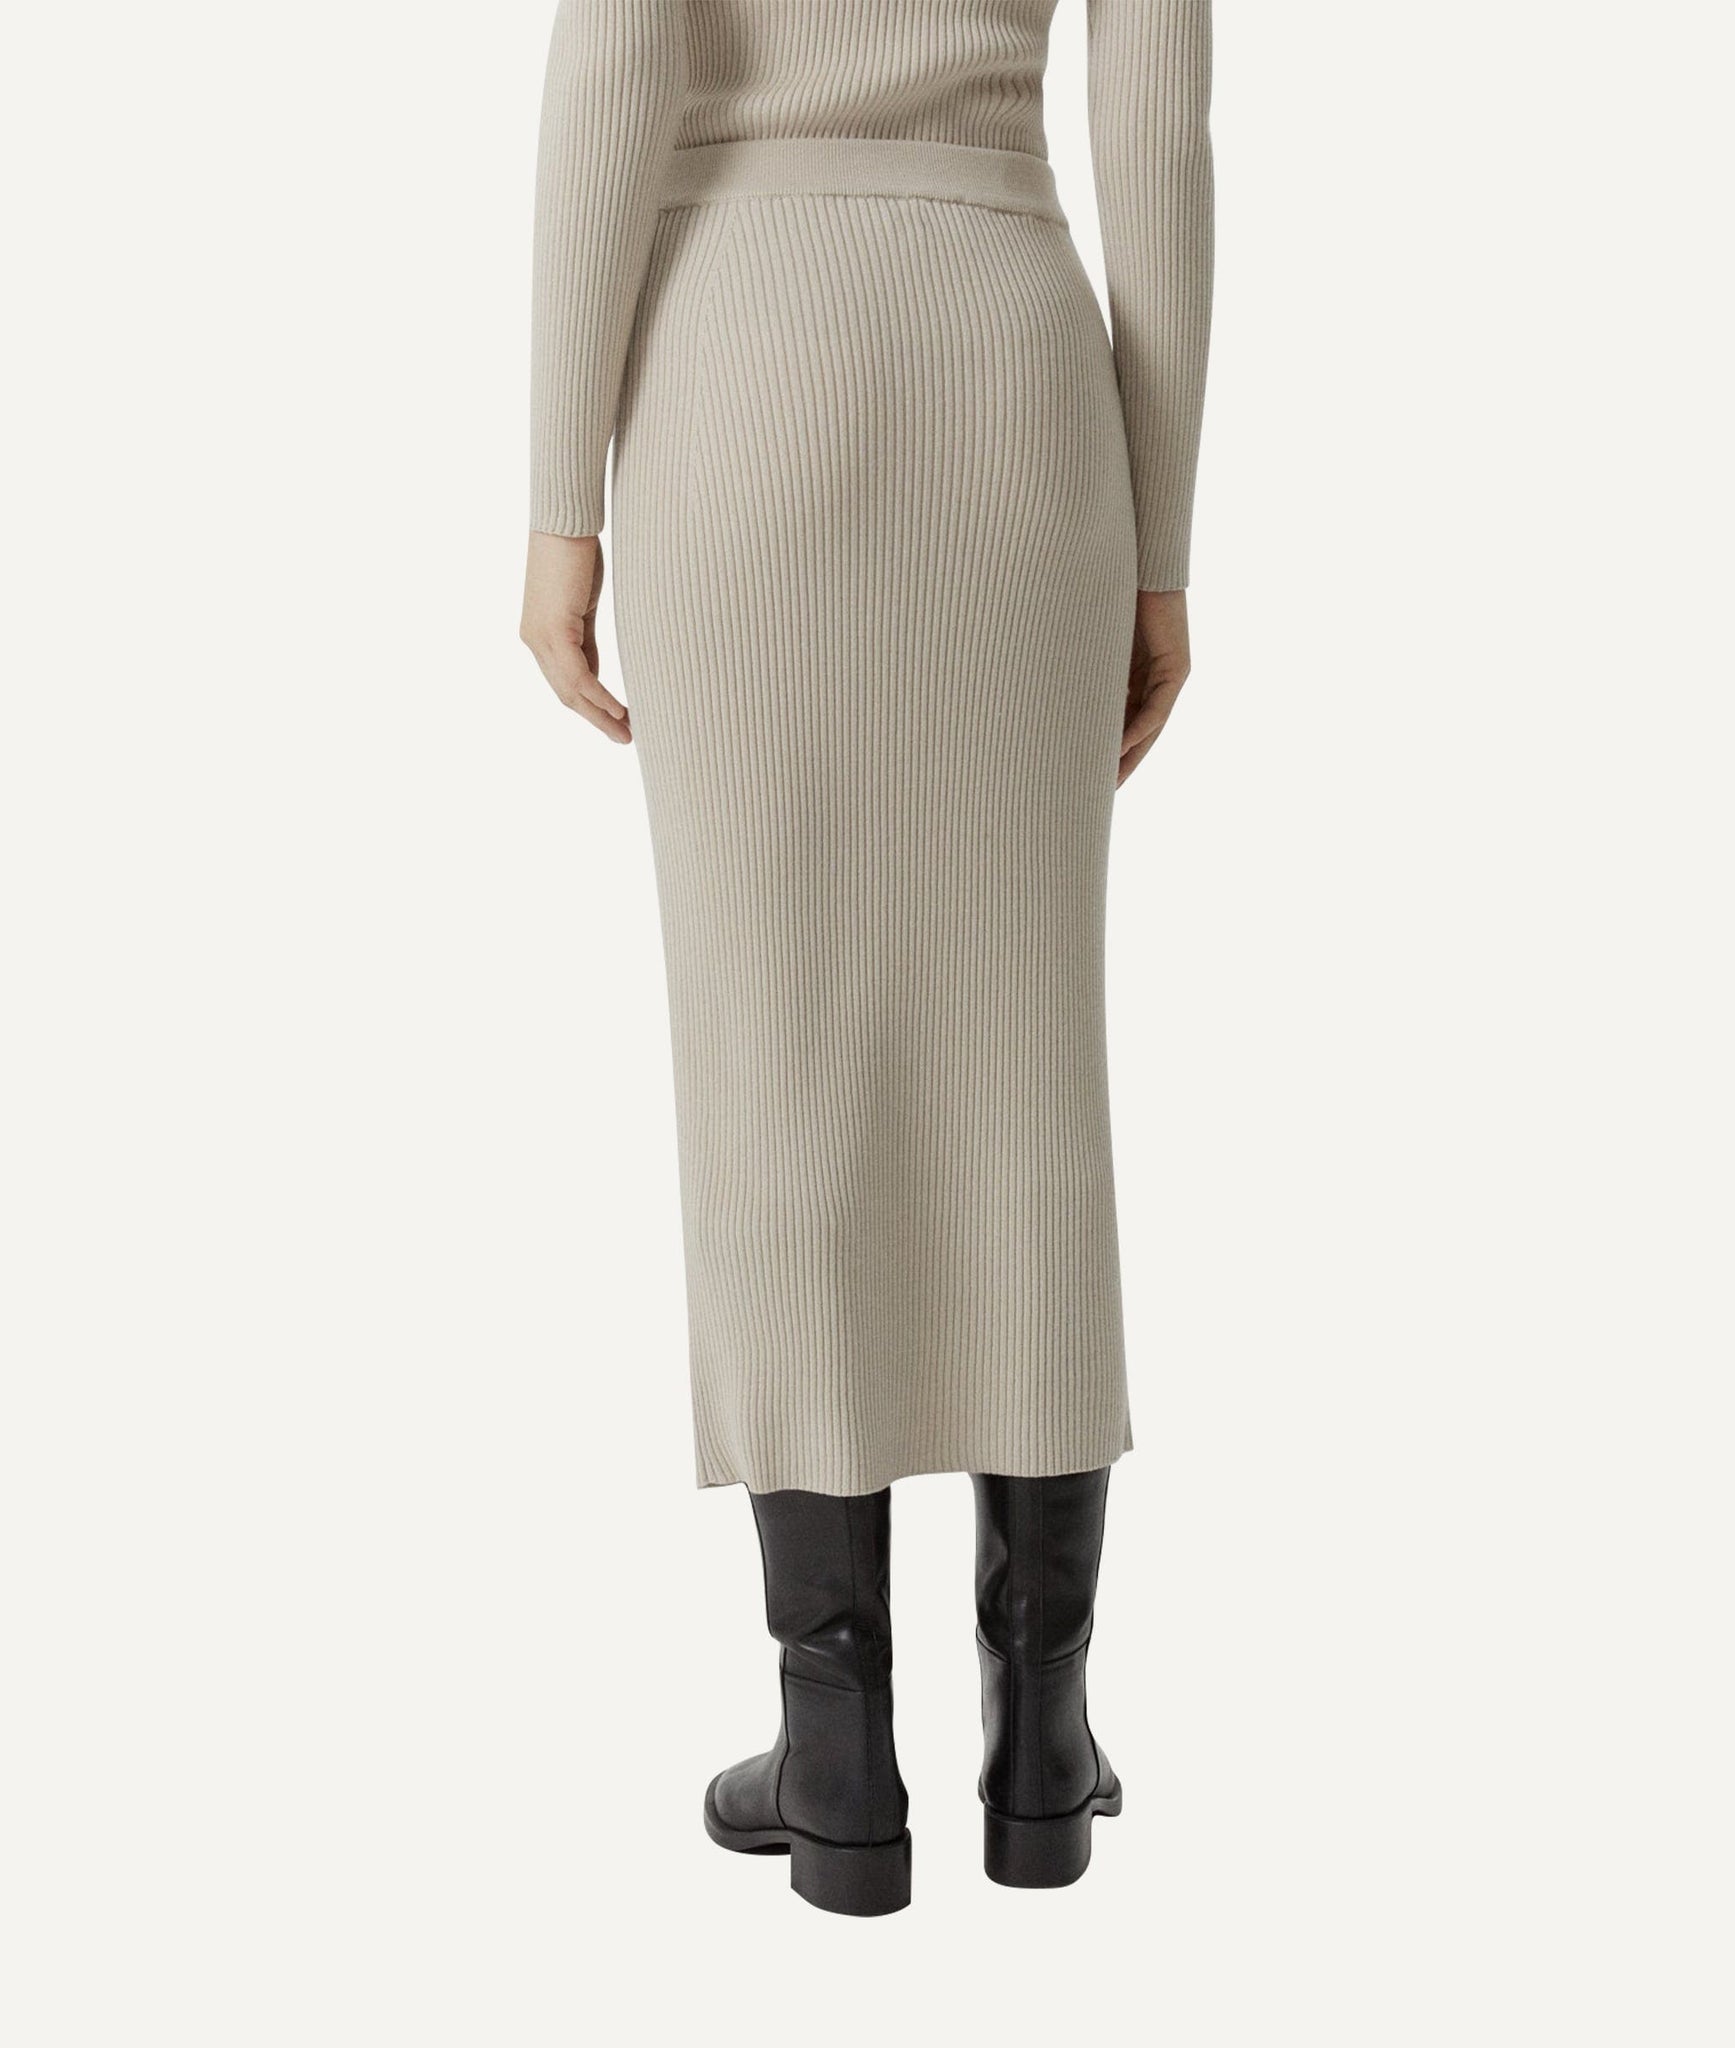 The Merino Wool Ribbed Skirt